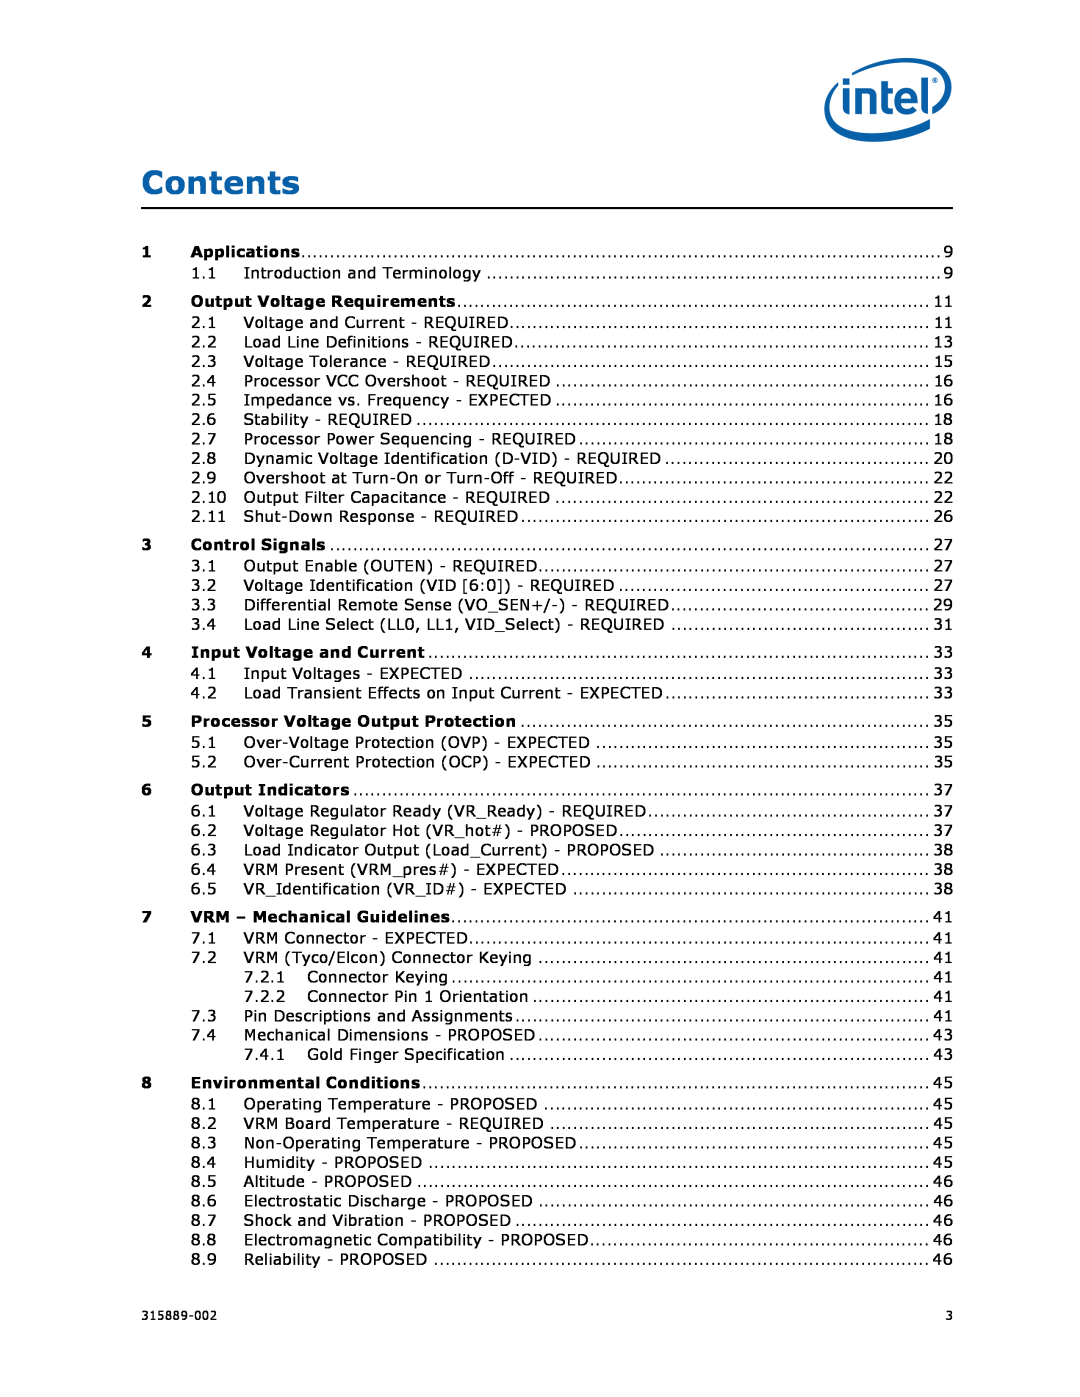 Intel 315889-002 manual Contents, Applications 